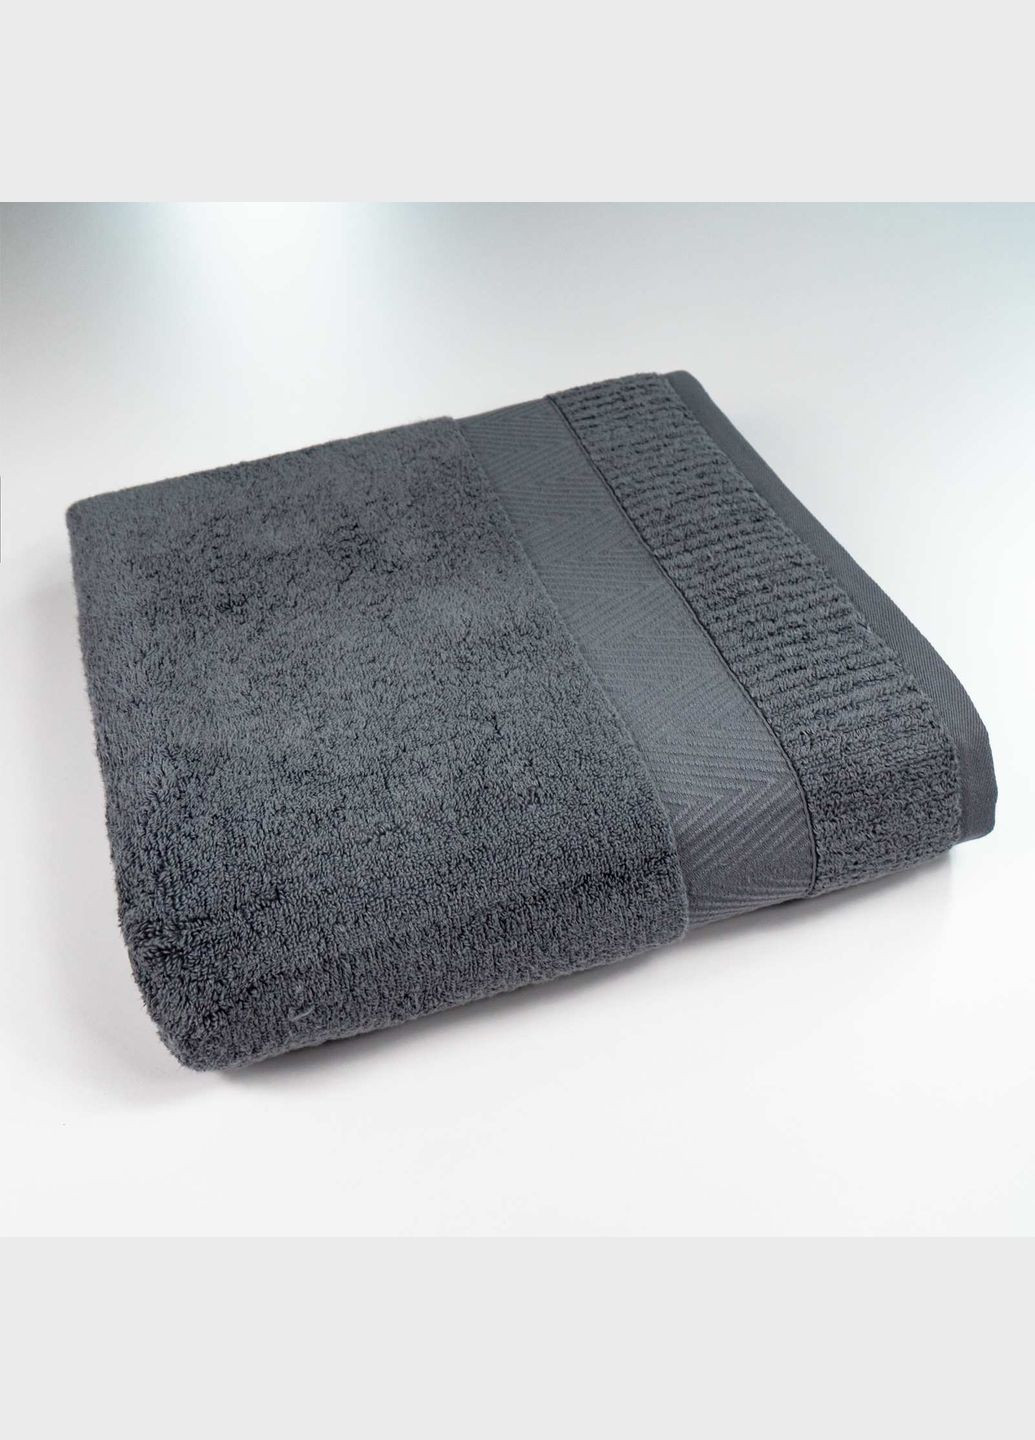 GM Textile комплект махровых полотенец зеро твист бордюр 3шт 40x70см, 50x90см, 70x140см 550г/м2 () серый производство -